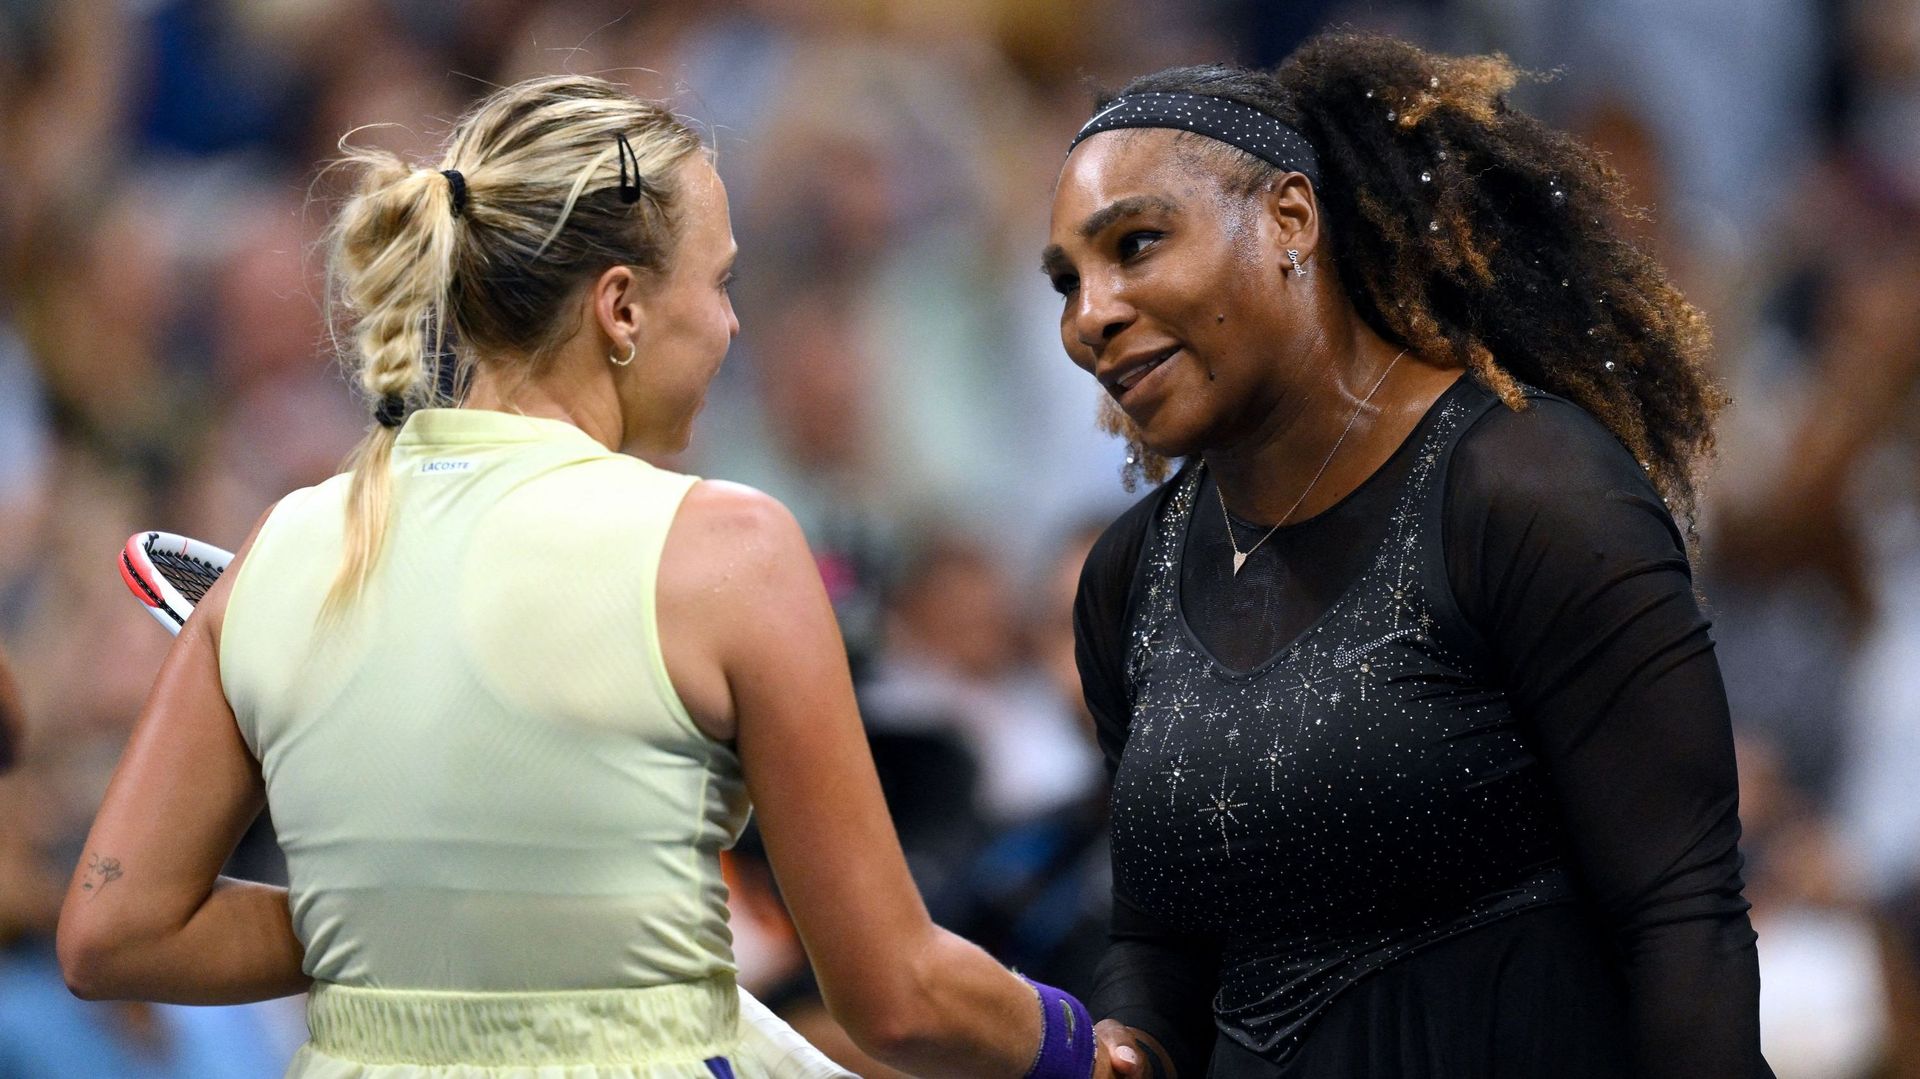 Serena Williams sur son petit nuage : "J’ai l’impression d’avoir déjà gagné"